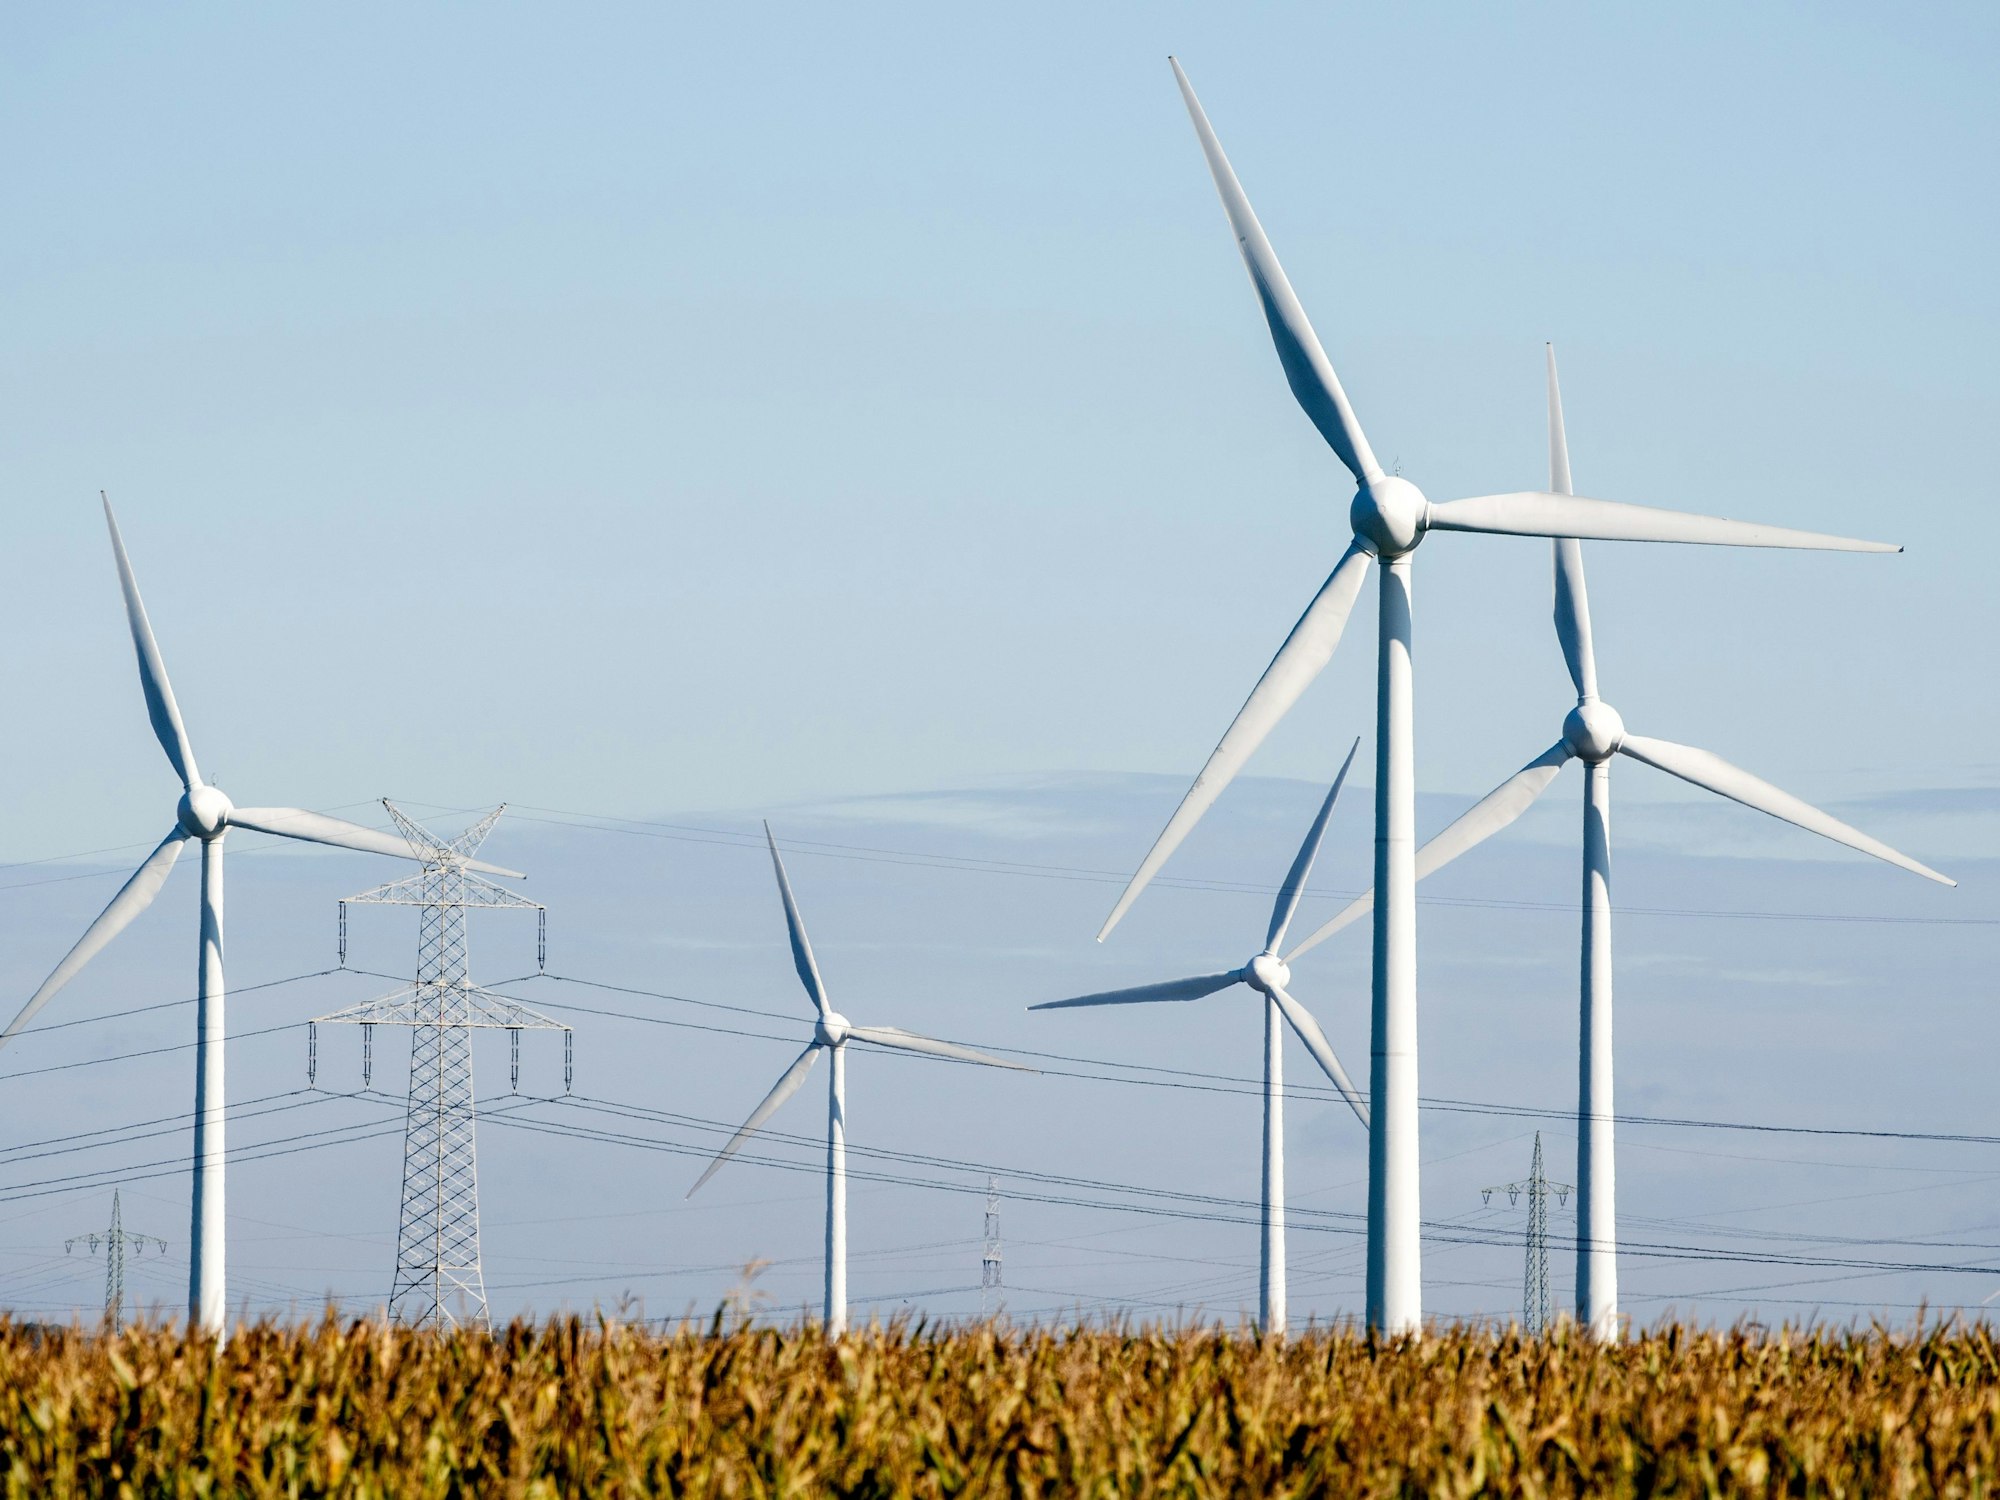 Mehrere Windkraftanlagen stehen bei sonnigem Herbstwetter neben einer Hochspannungsleitung und drehen sich im Wind.